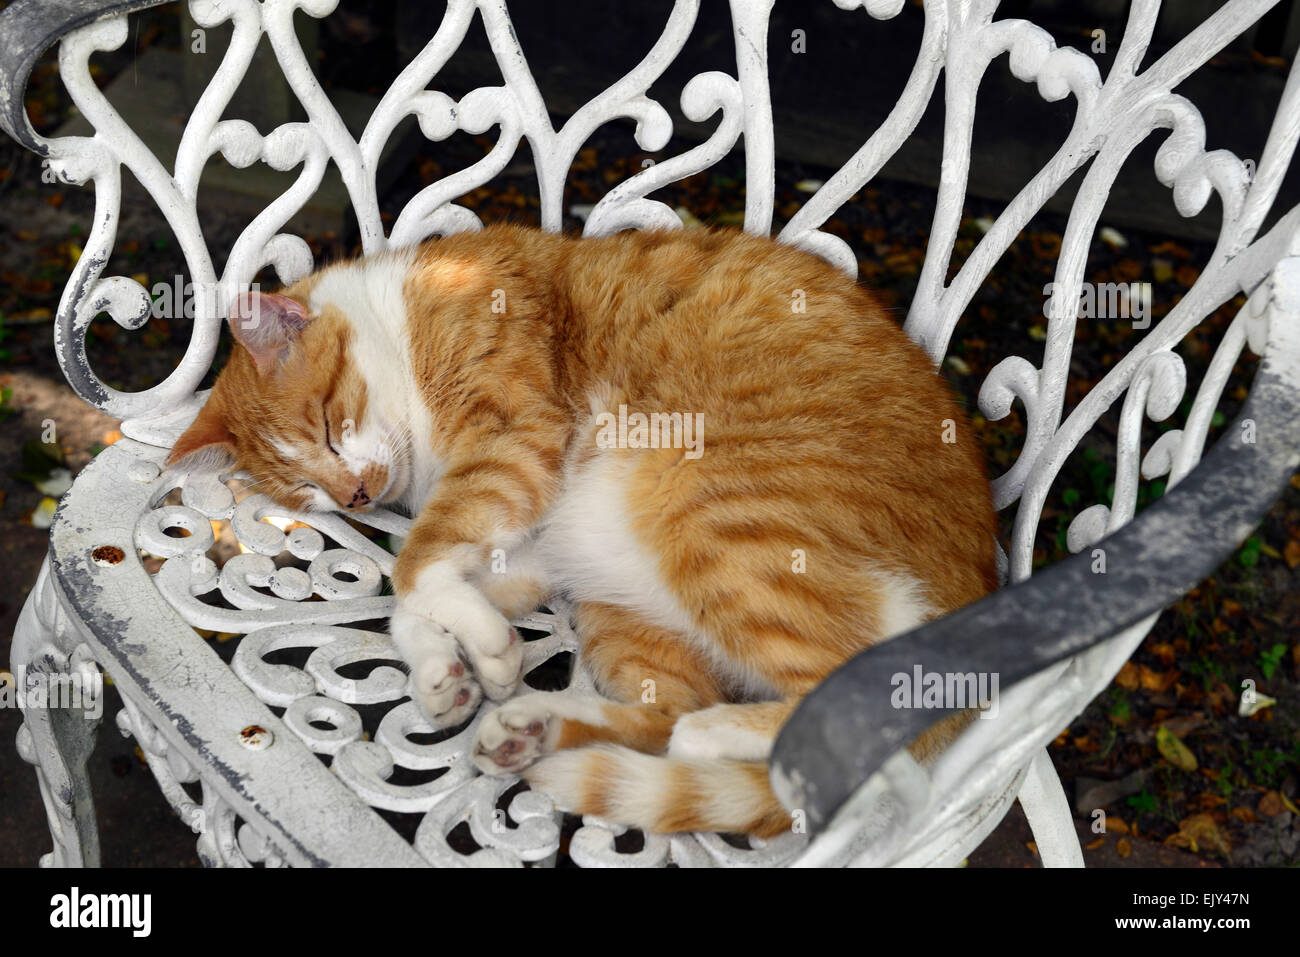 Marmelade de gingembre cat endormi couché blanc fer forgé chaise en métal meubles de patio ombragé Floral RM Banque D'Images